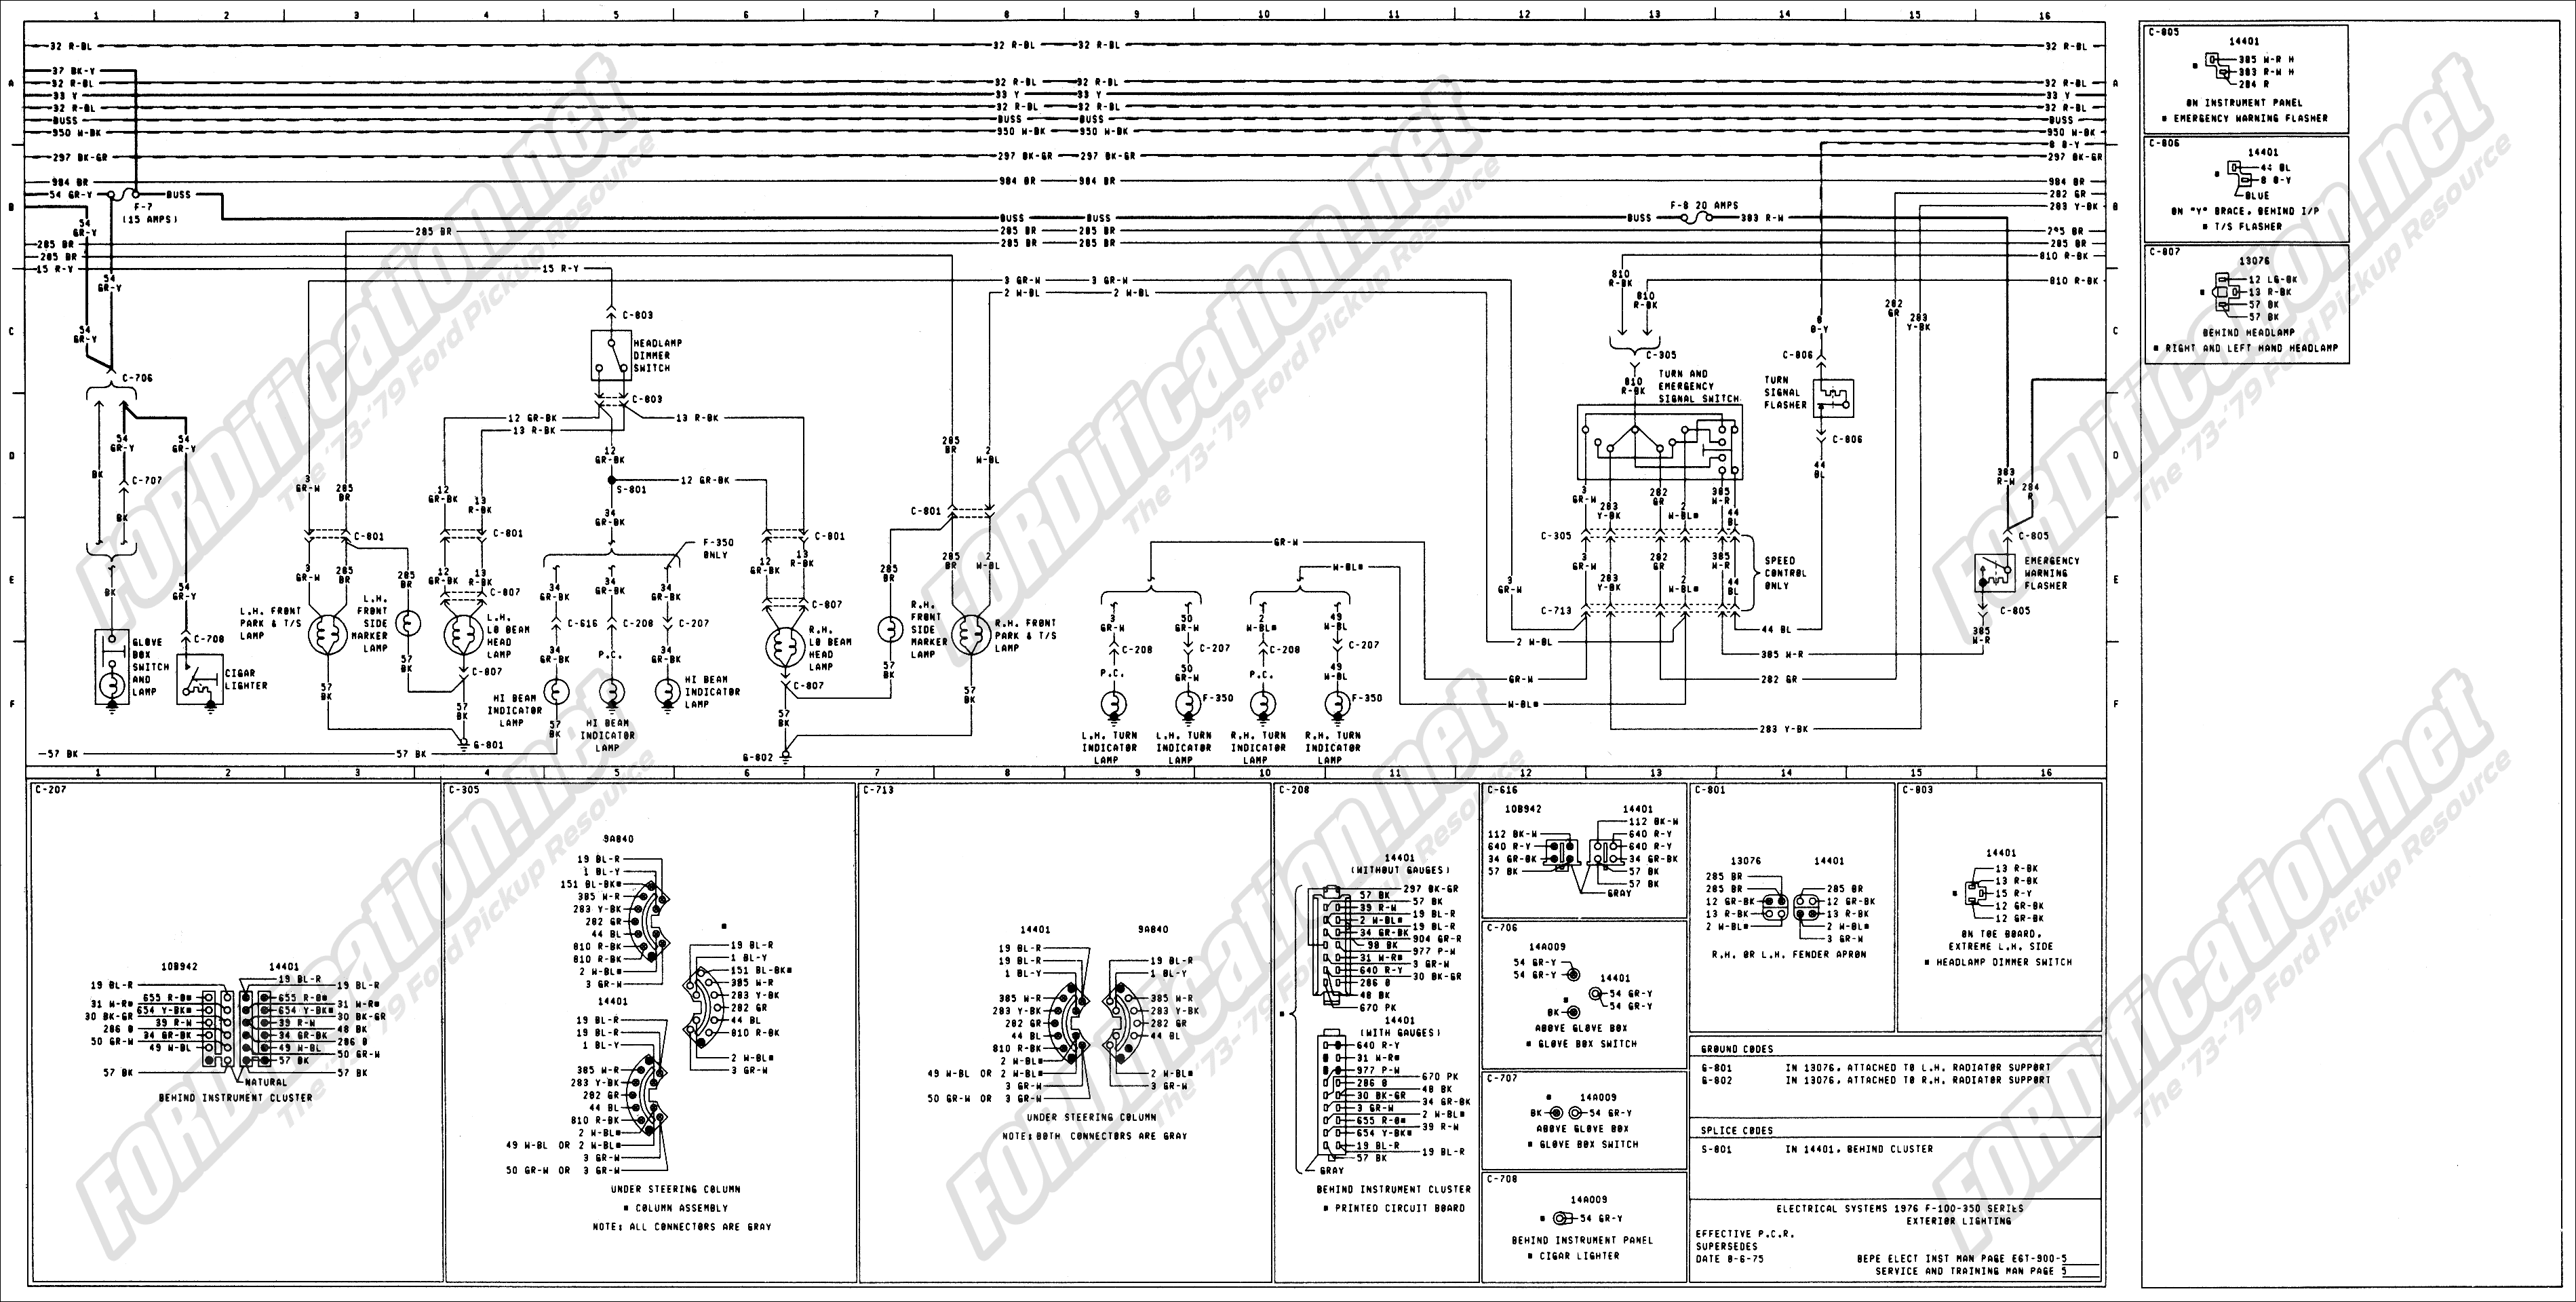 1976 Toyotum Wiring Harnes Diagram - Wiring Diagram Schemas